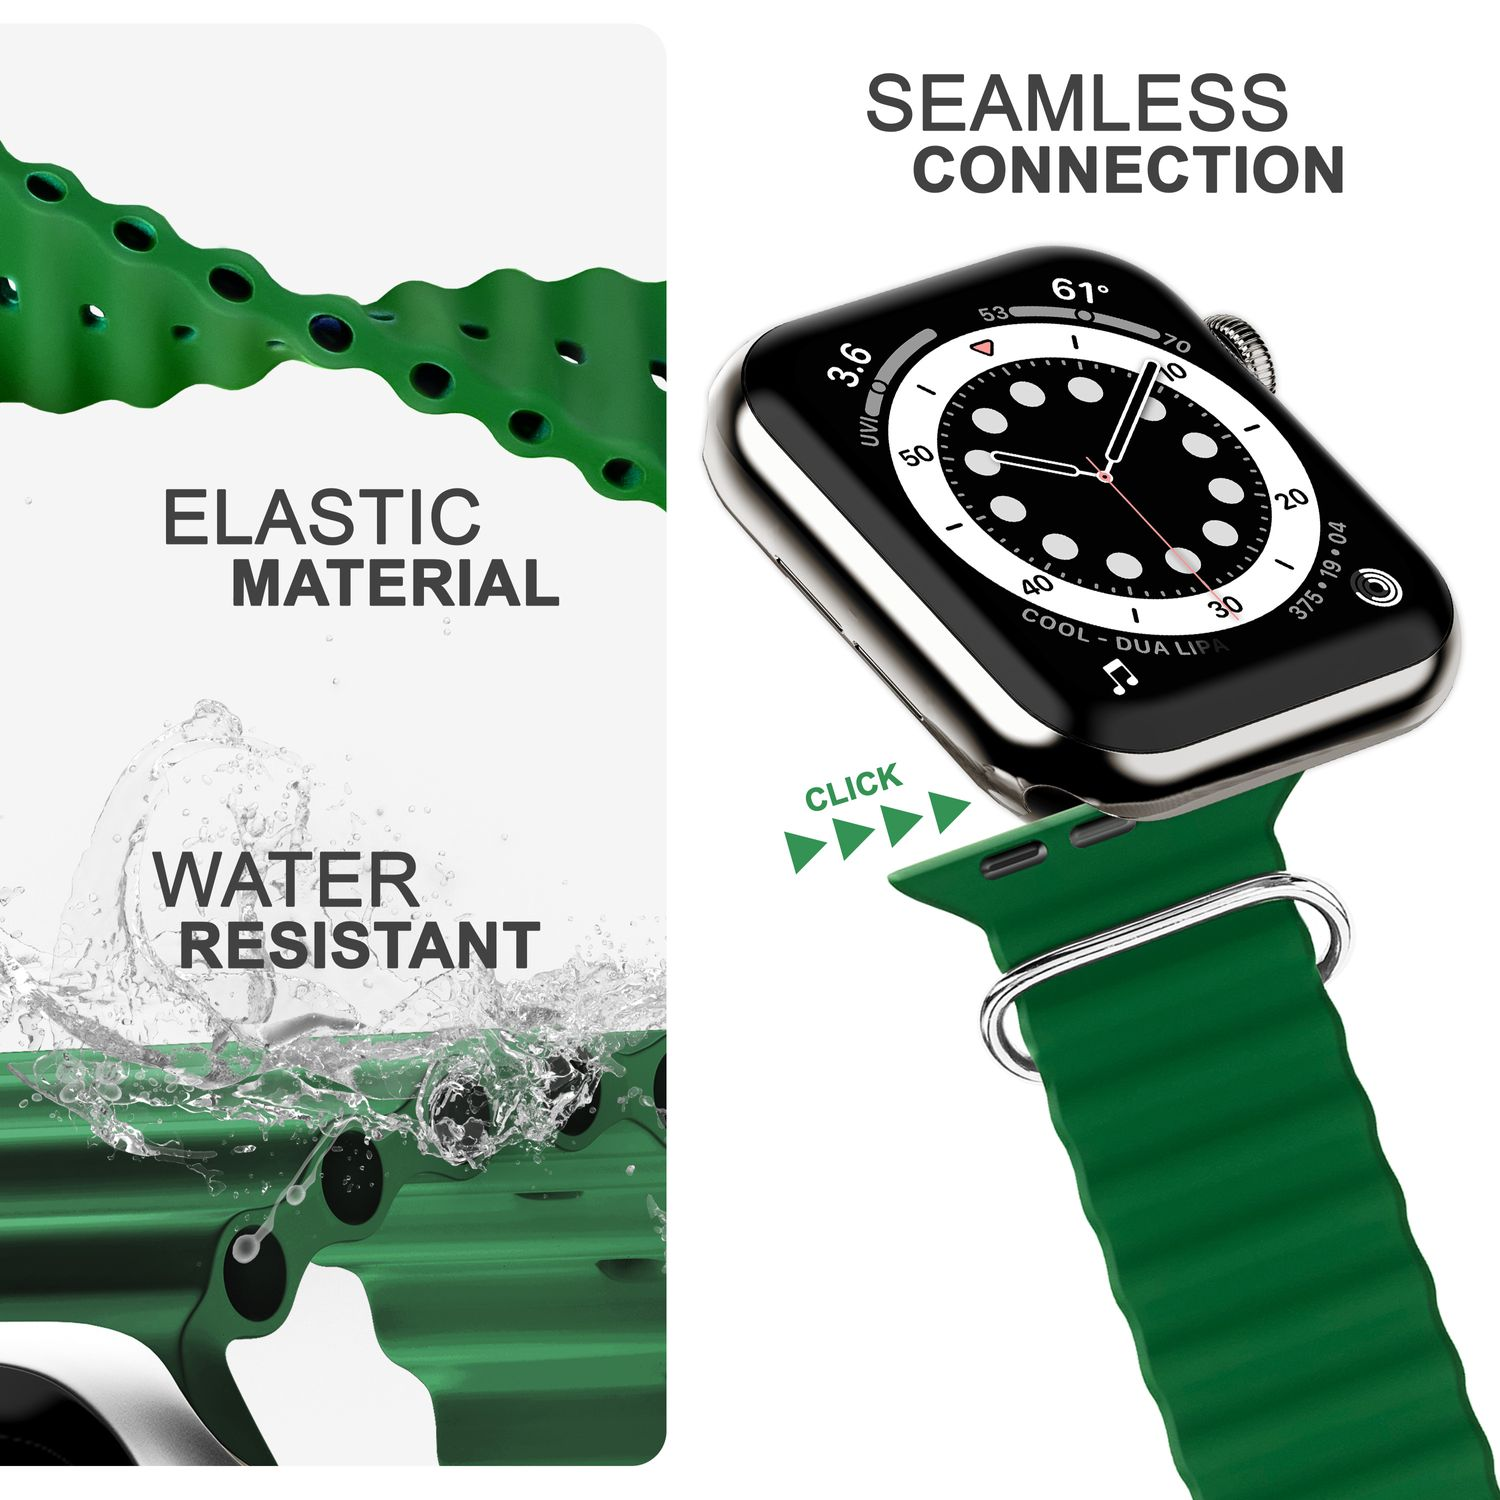 Watch Apple Ocean, Ersatzarmband, NALIA 42mm/44mm/45mm/49mm, Grün Apple, Sport-Armband Smartwatch